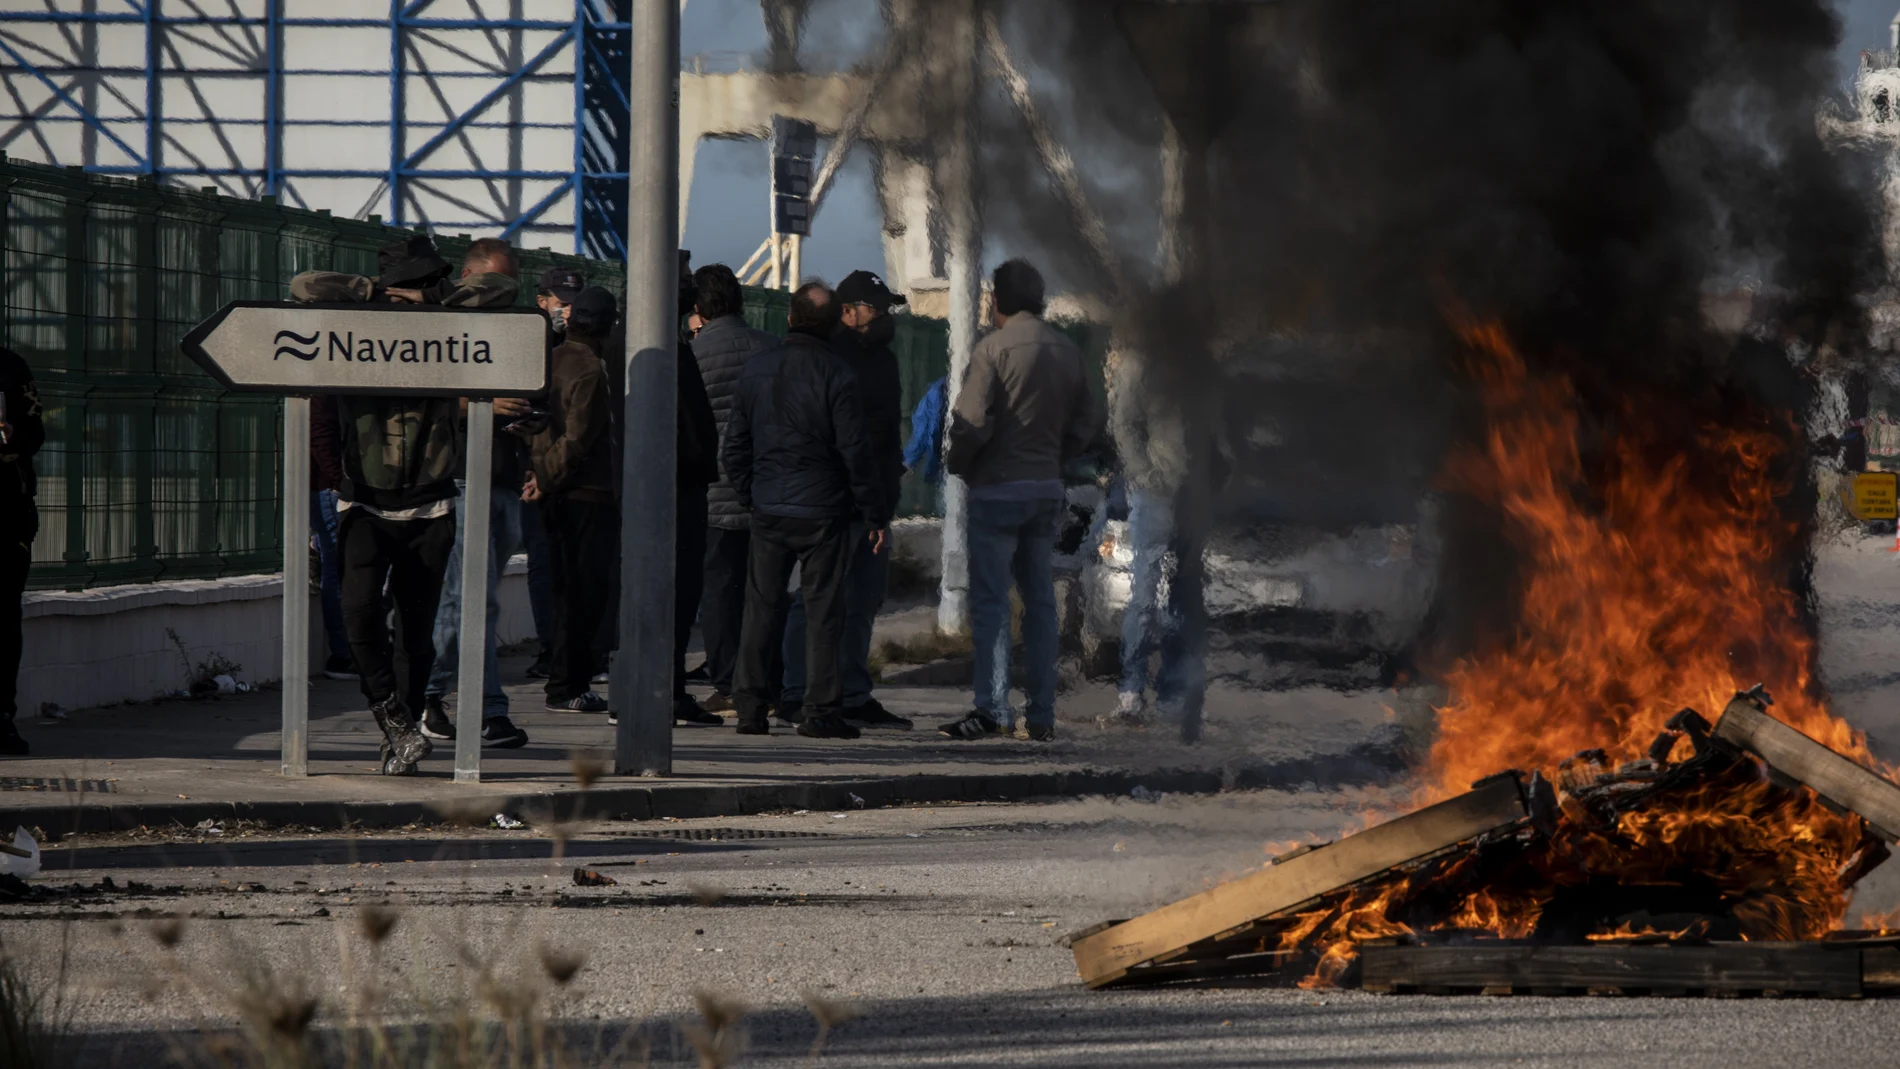 Las protestas de la huelga del metal pusieron el foco de nuevo en la economía de Cádiz. (AP Photo/Javier Fergo)